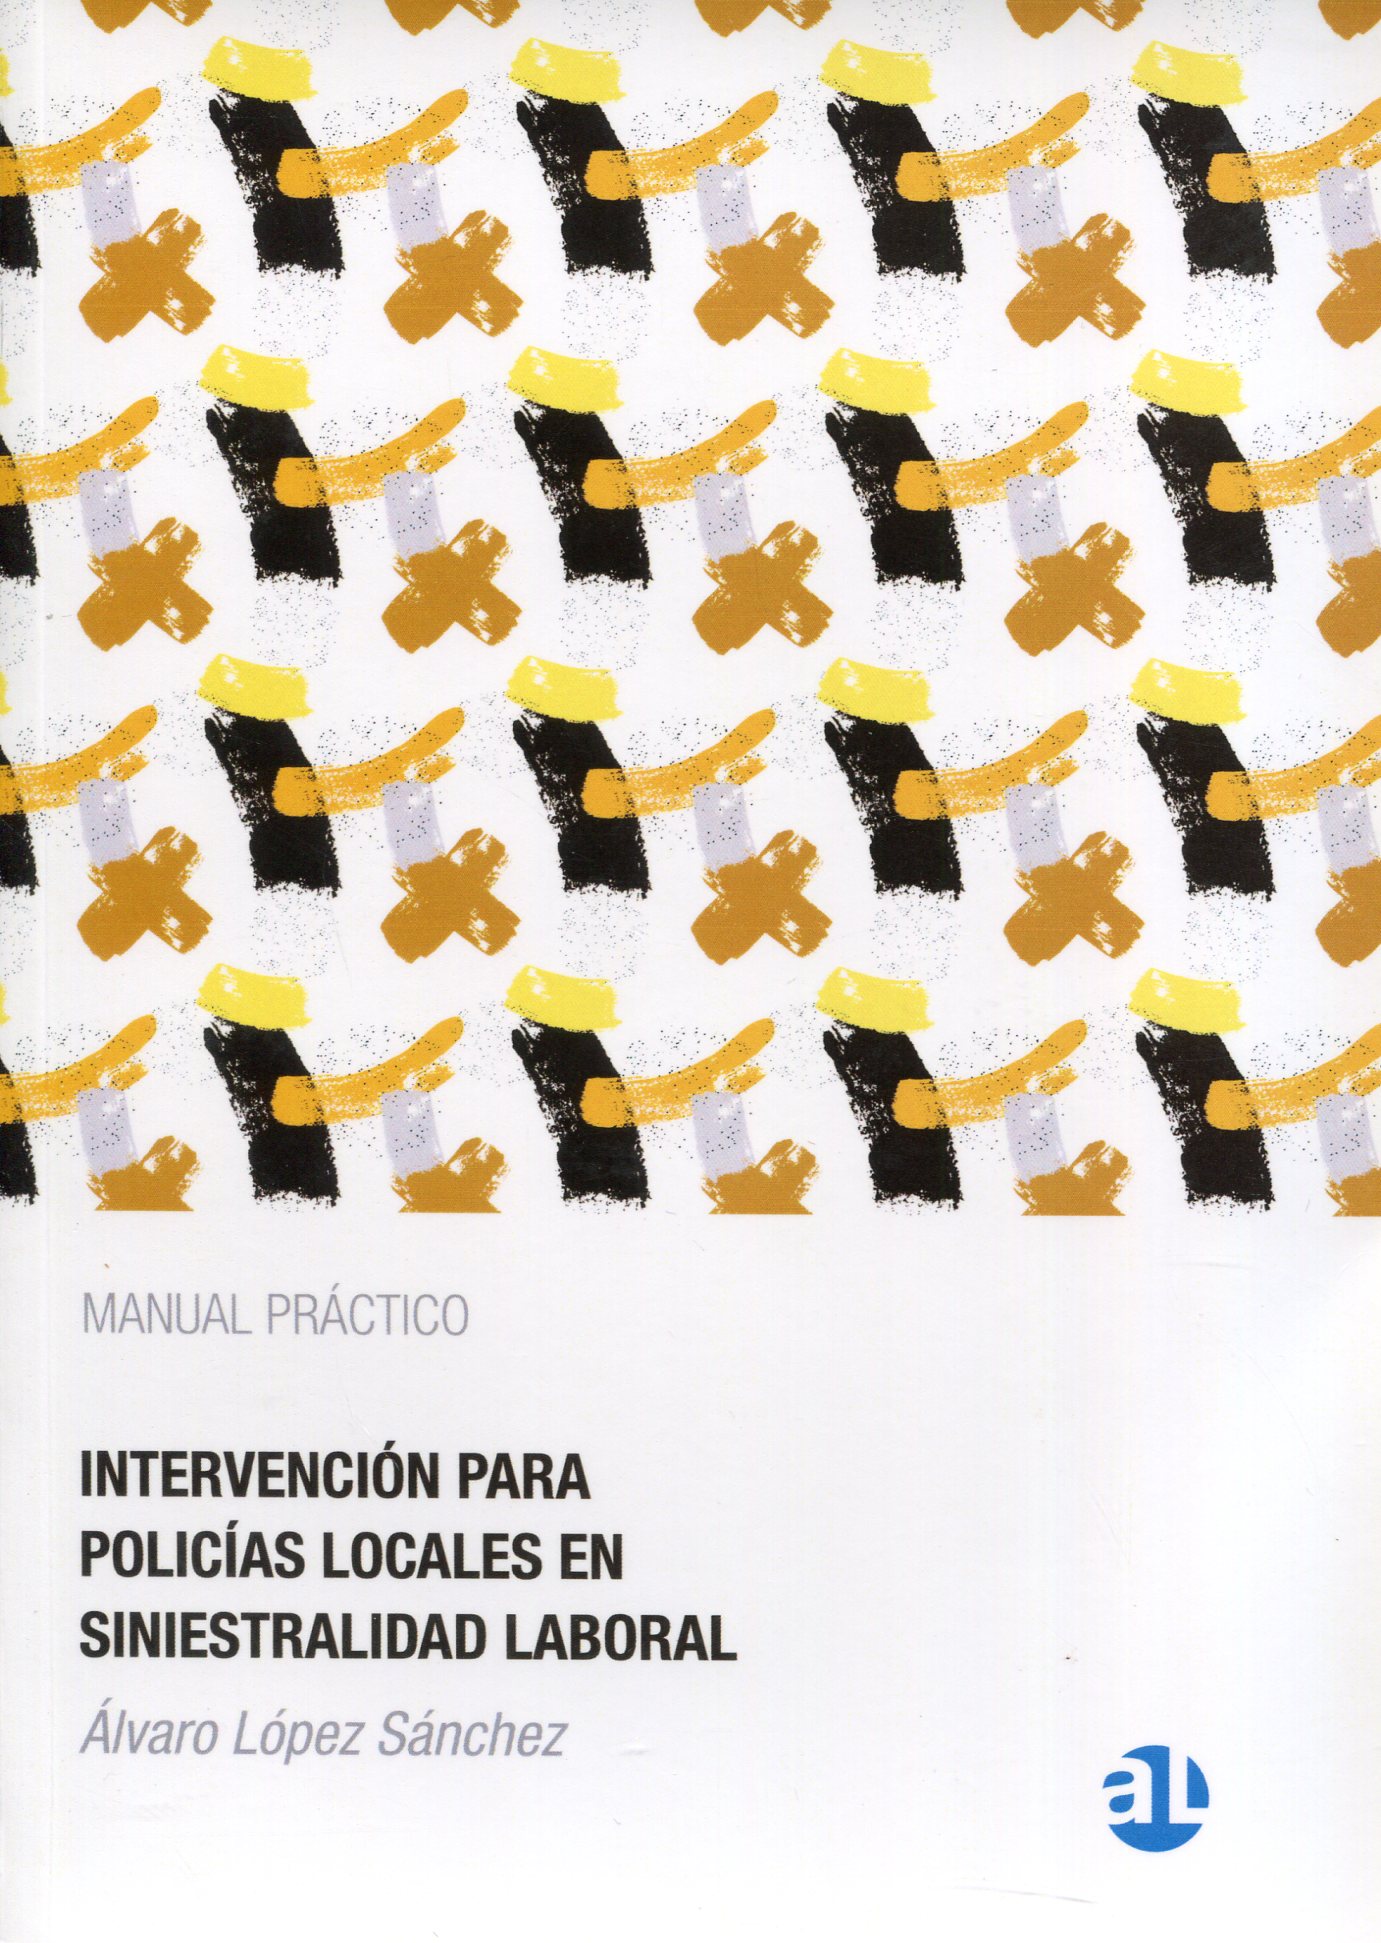 Manual práctico de intervención para policías locales en siniestralidad laboral